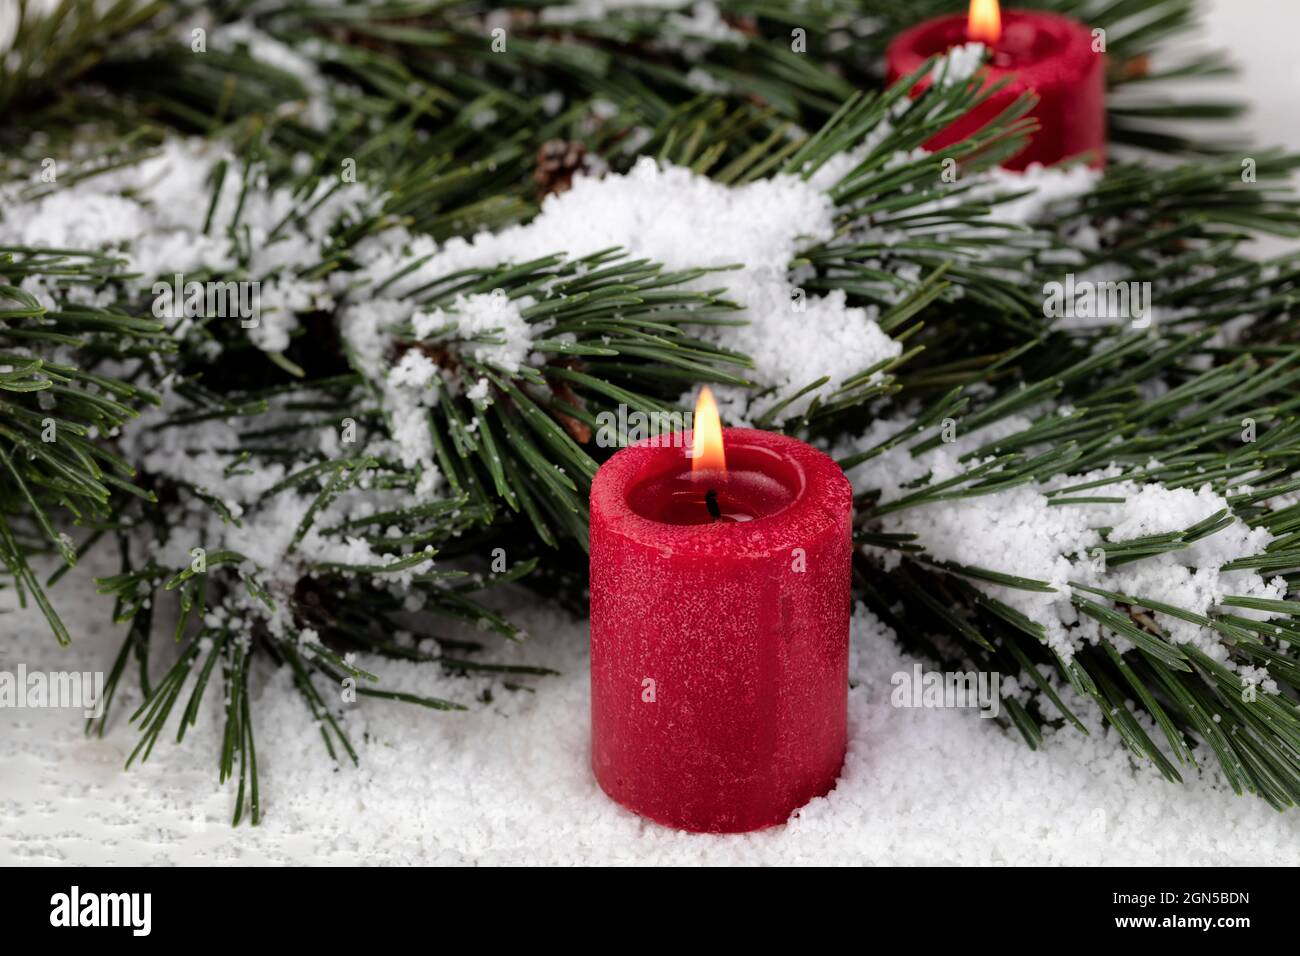 Vue rapprochée d'une bougie rouge lumineuse avec branches de sapin enneigées en arrière-plan pour un joyeux Noël ou une bonne fête du nouvel an Banque D'Images